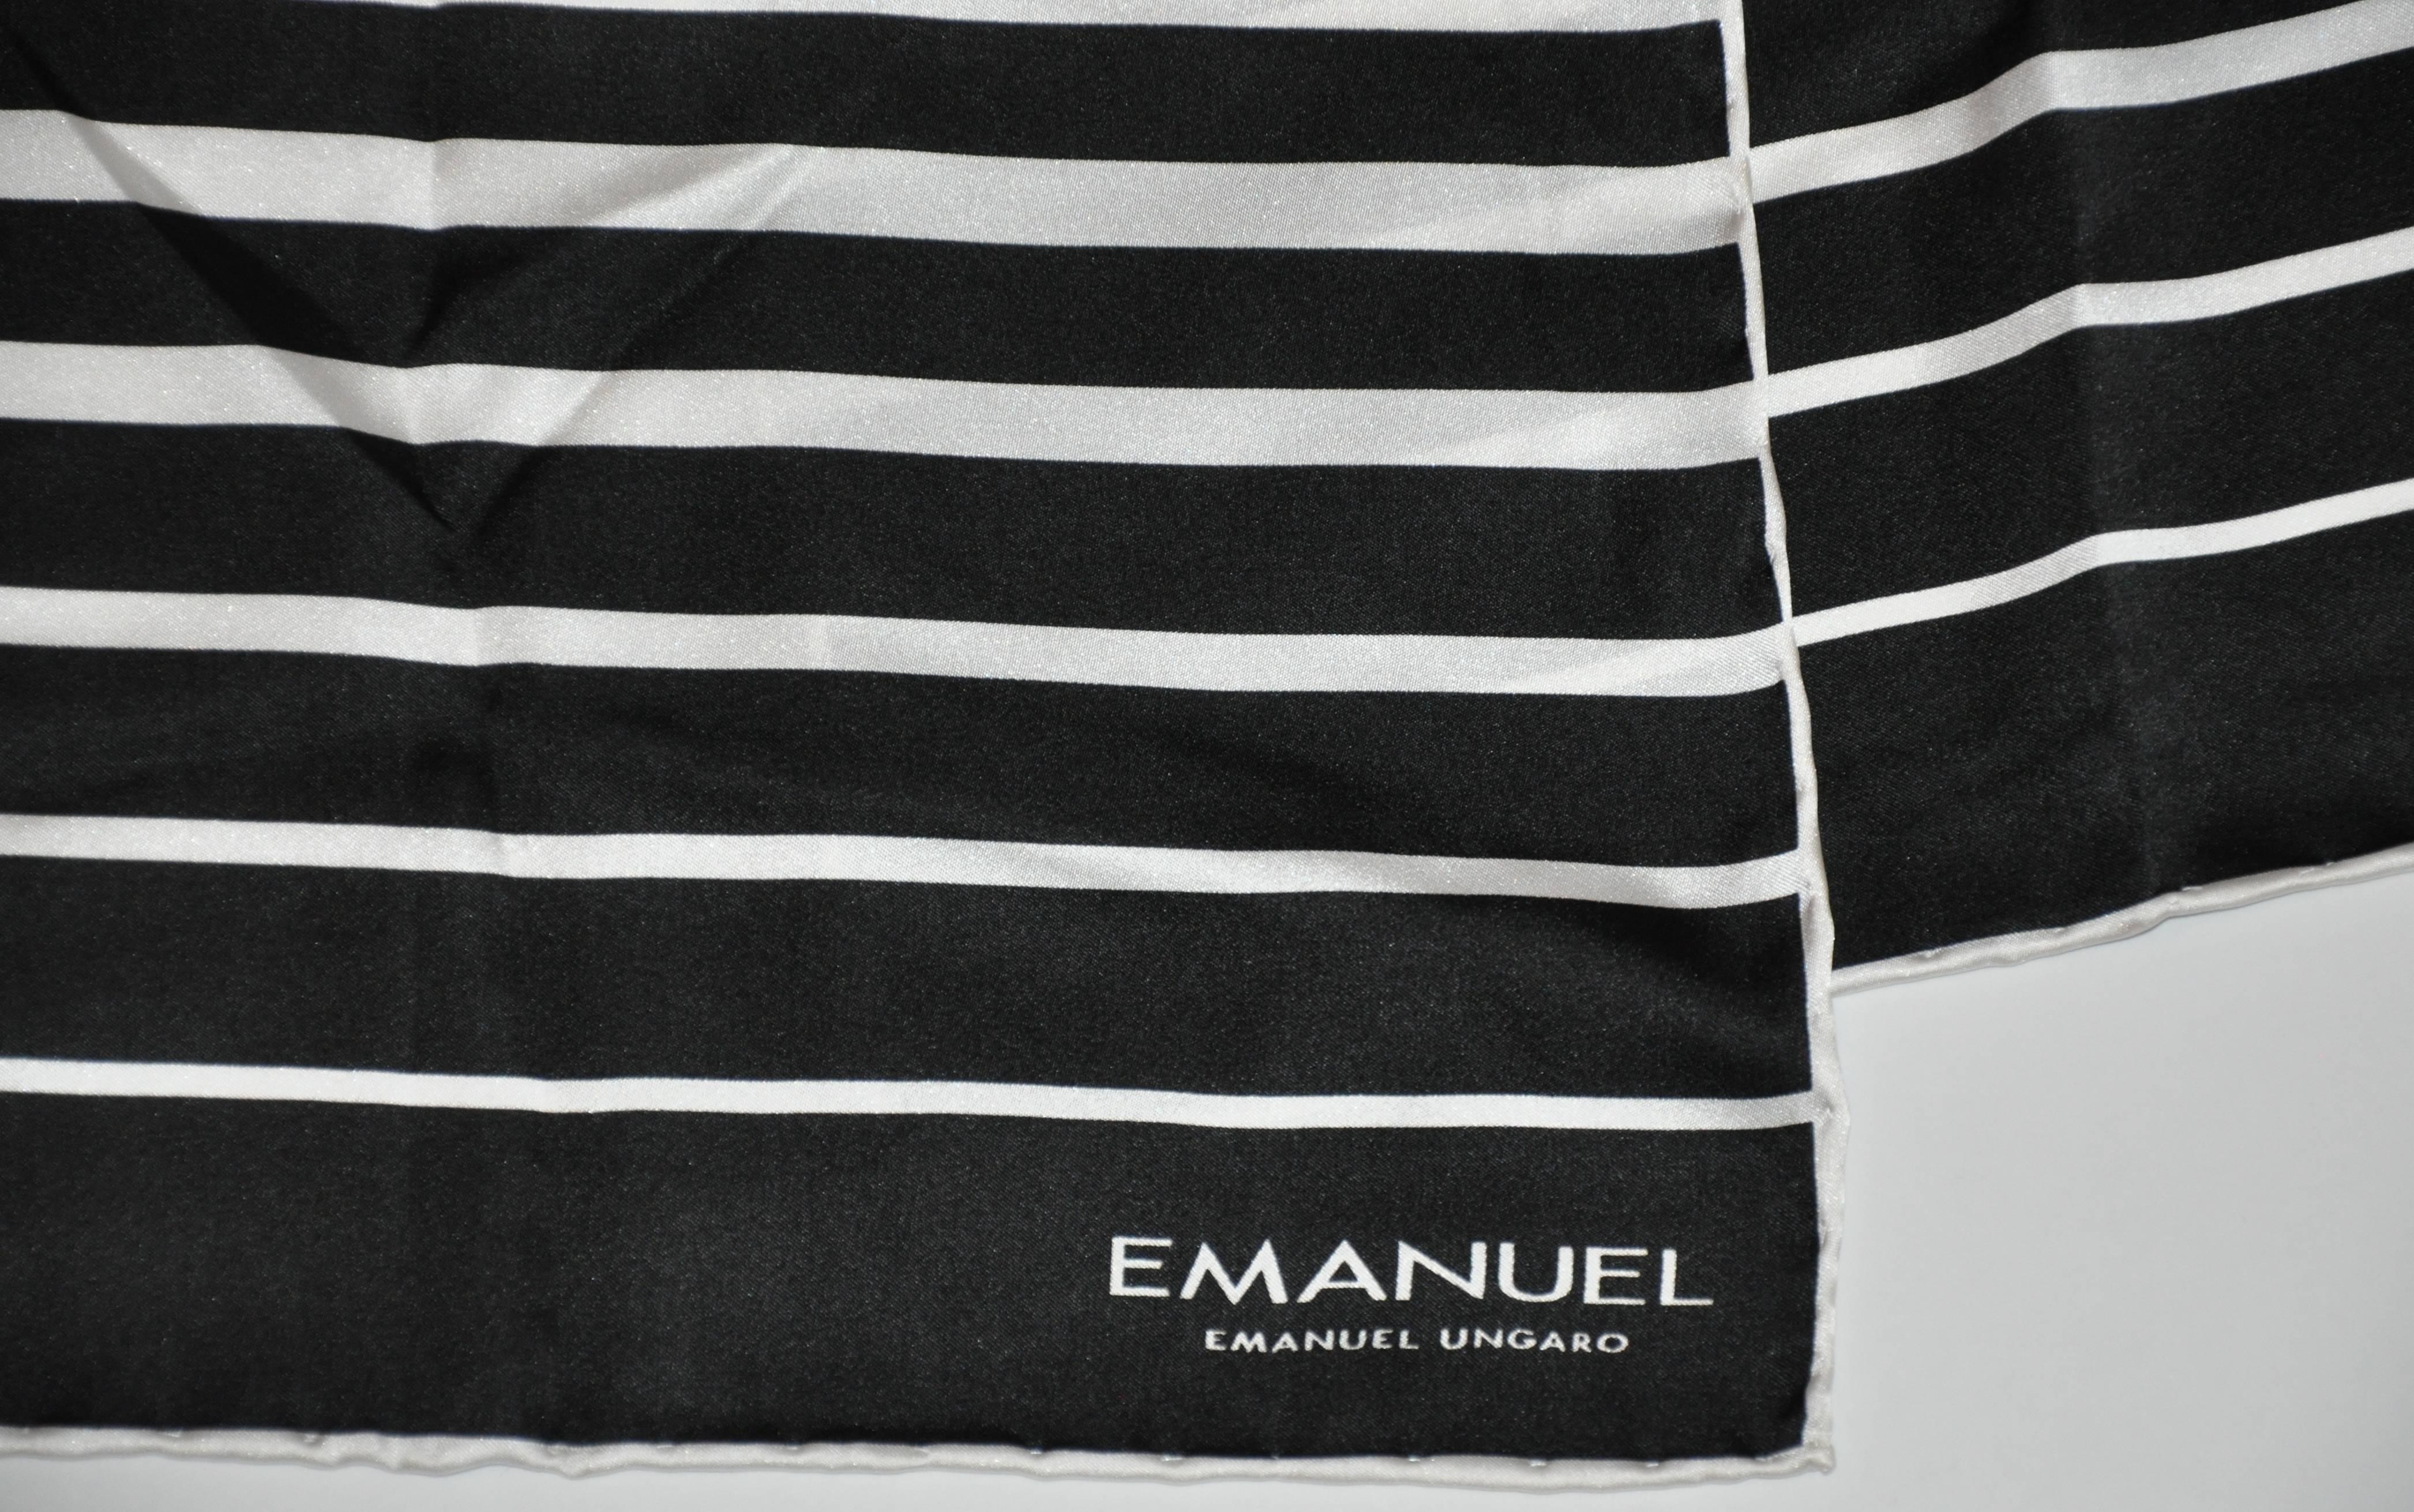         Emanuel Ungaro wunderbar eleganten schwarz-weißen Seide Rechteck Schal misst 12 1/2 